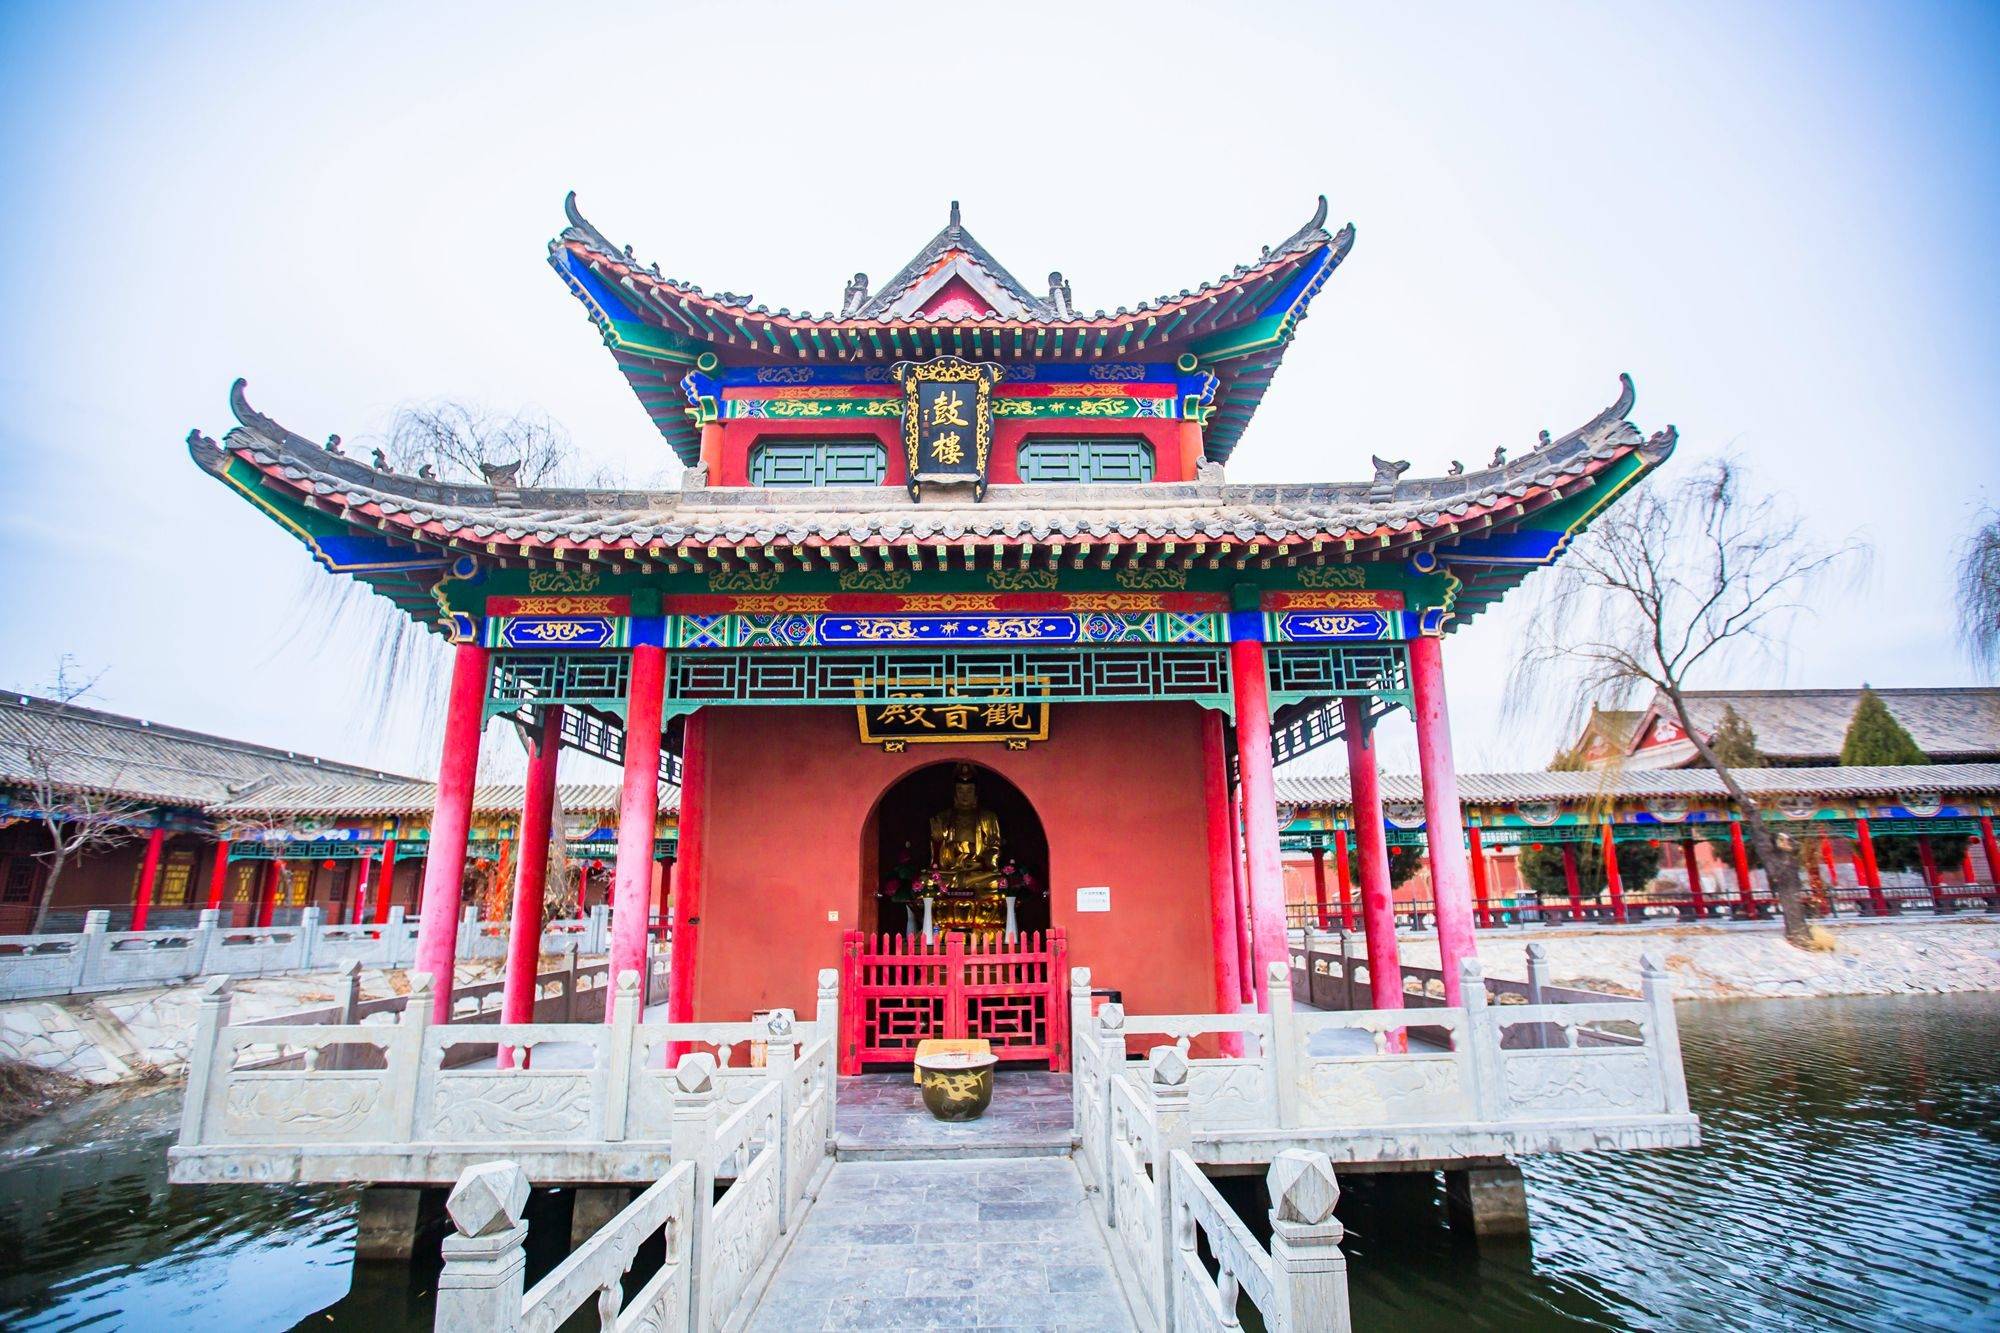 邯郸甘露寺始建于北魏,已有1400多年历史,最初名百草寺,后改名甘露寺